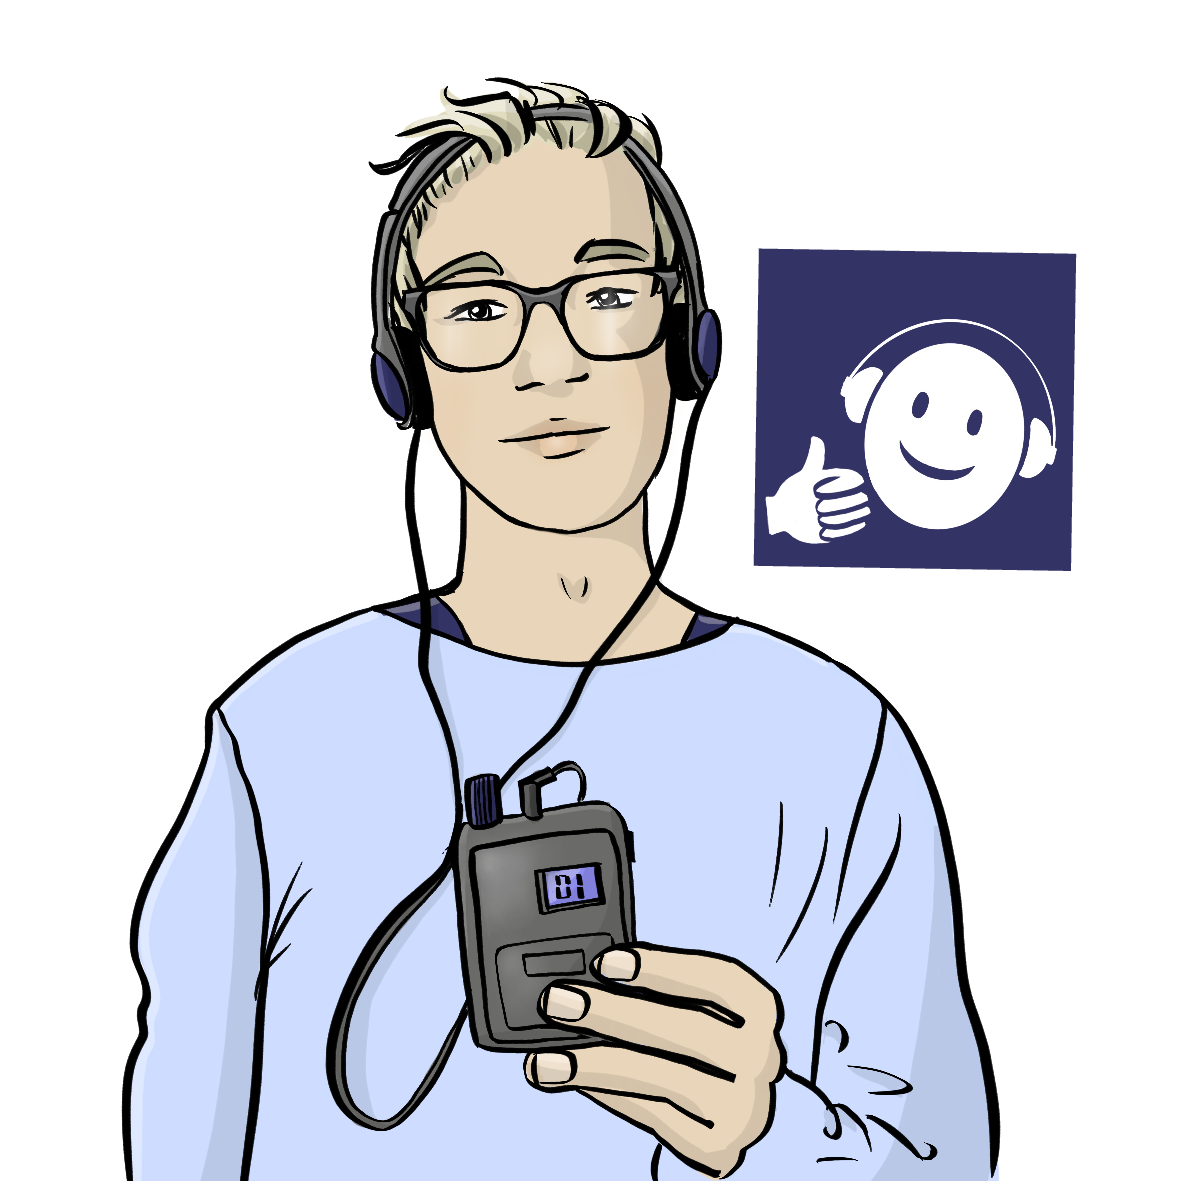 Ein Mann trägt Kopfhörer und hält ein Empfängergerät in der Hand. Neben ihm ist ein Zeichen: Ein blaues Quadrat mit einem weißen, lachenden Gesicht mit Kopfhörern und ein nach oben zeigender Daumen. 